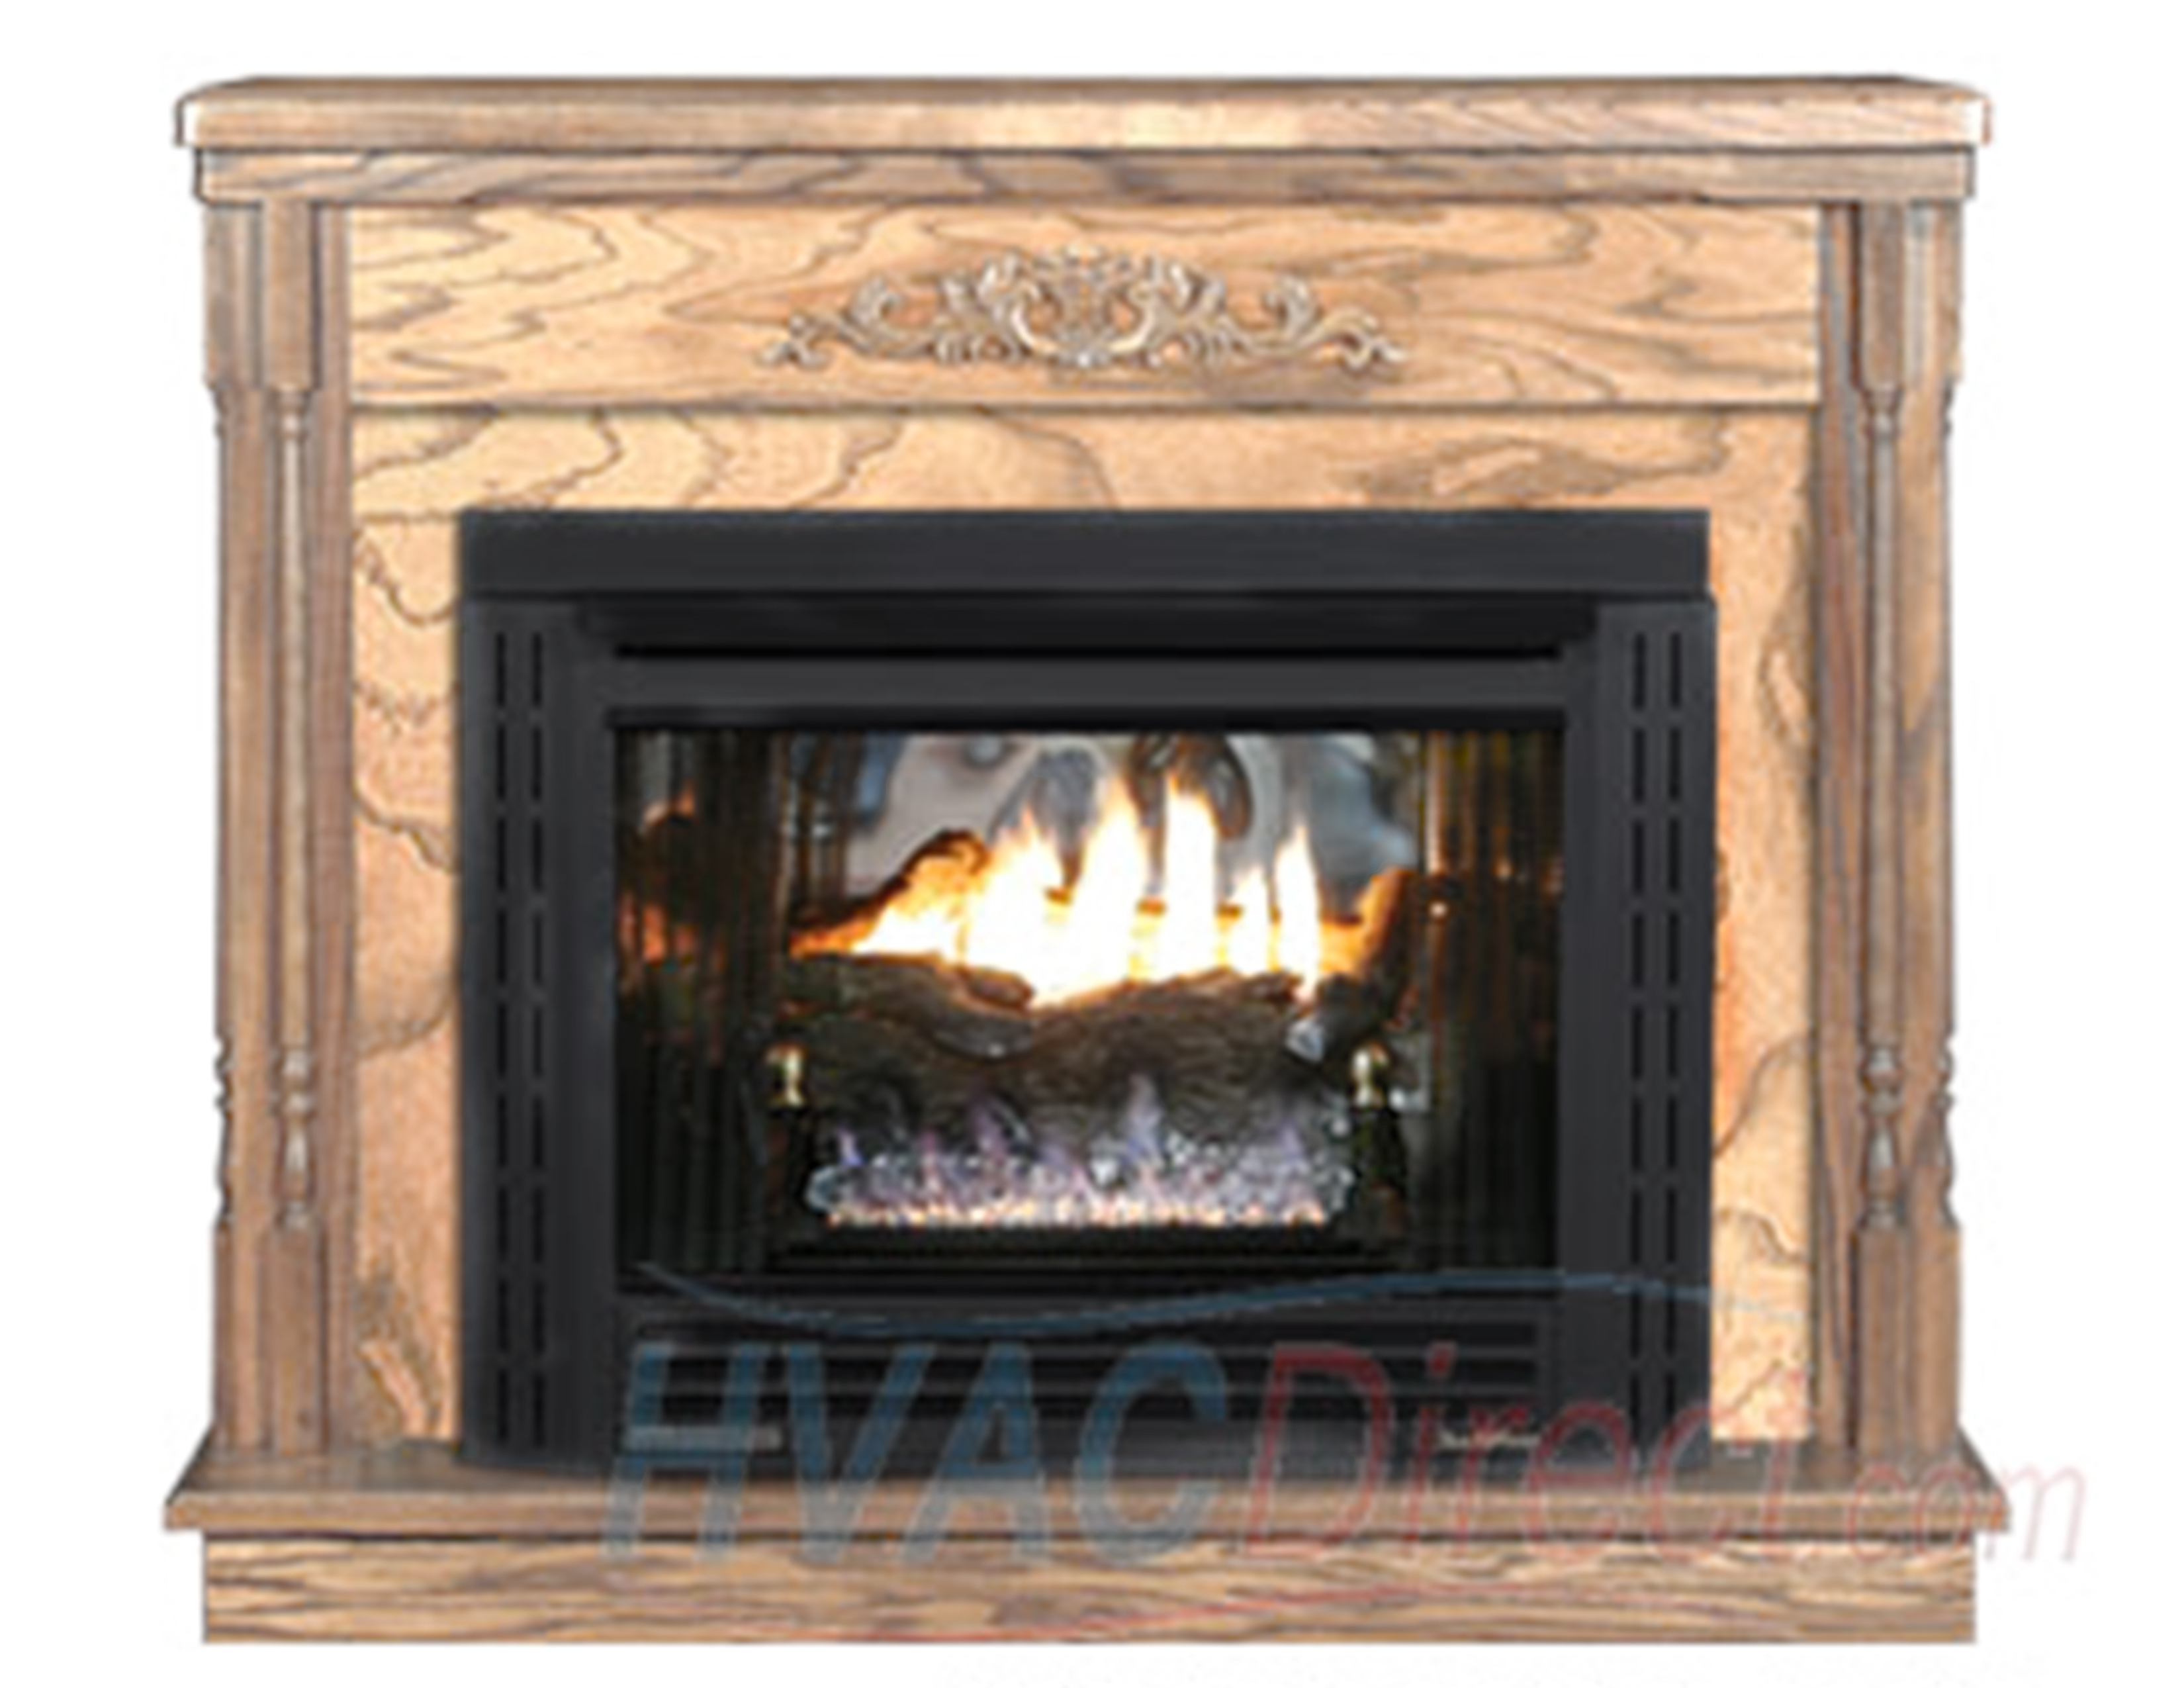 Gas Fireplace Gas Valve Lovely Buck Stove Model 34zc Vent Free Gas Fireplace